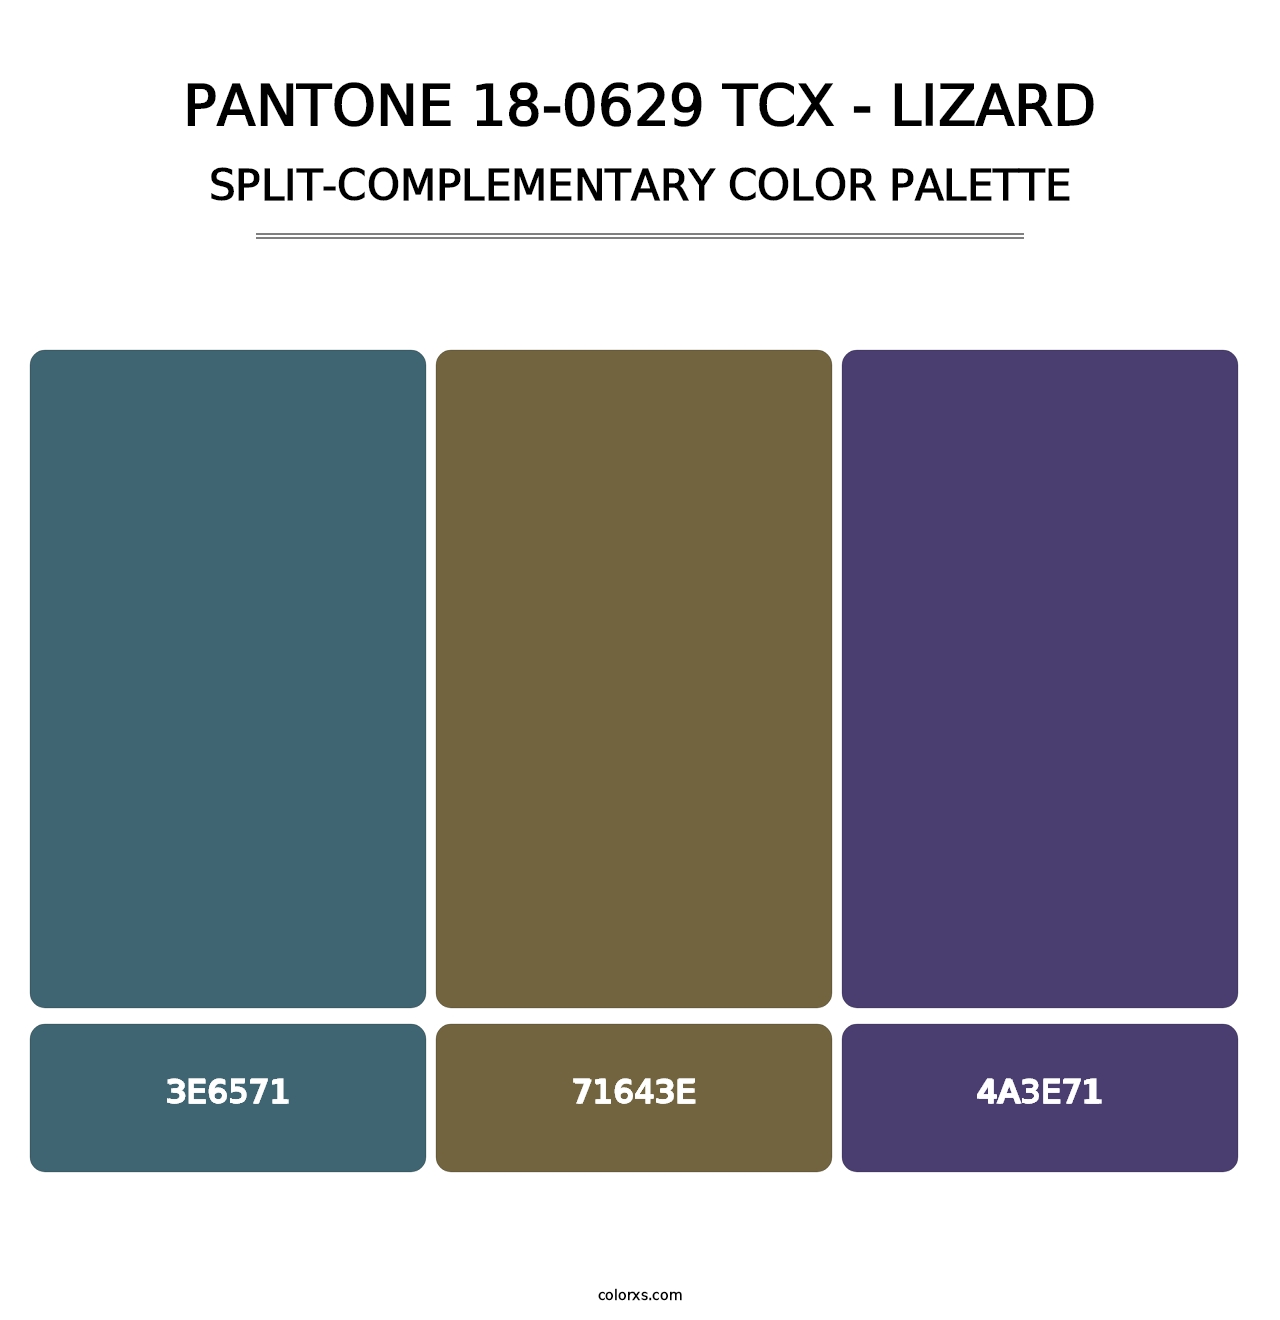 PANTONE 18-0629 TCX - Lizard - Split-Complementary Color Palette